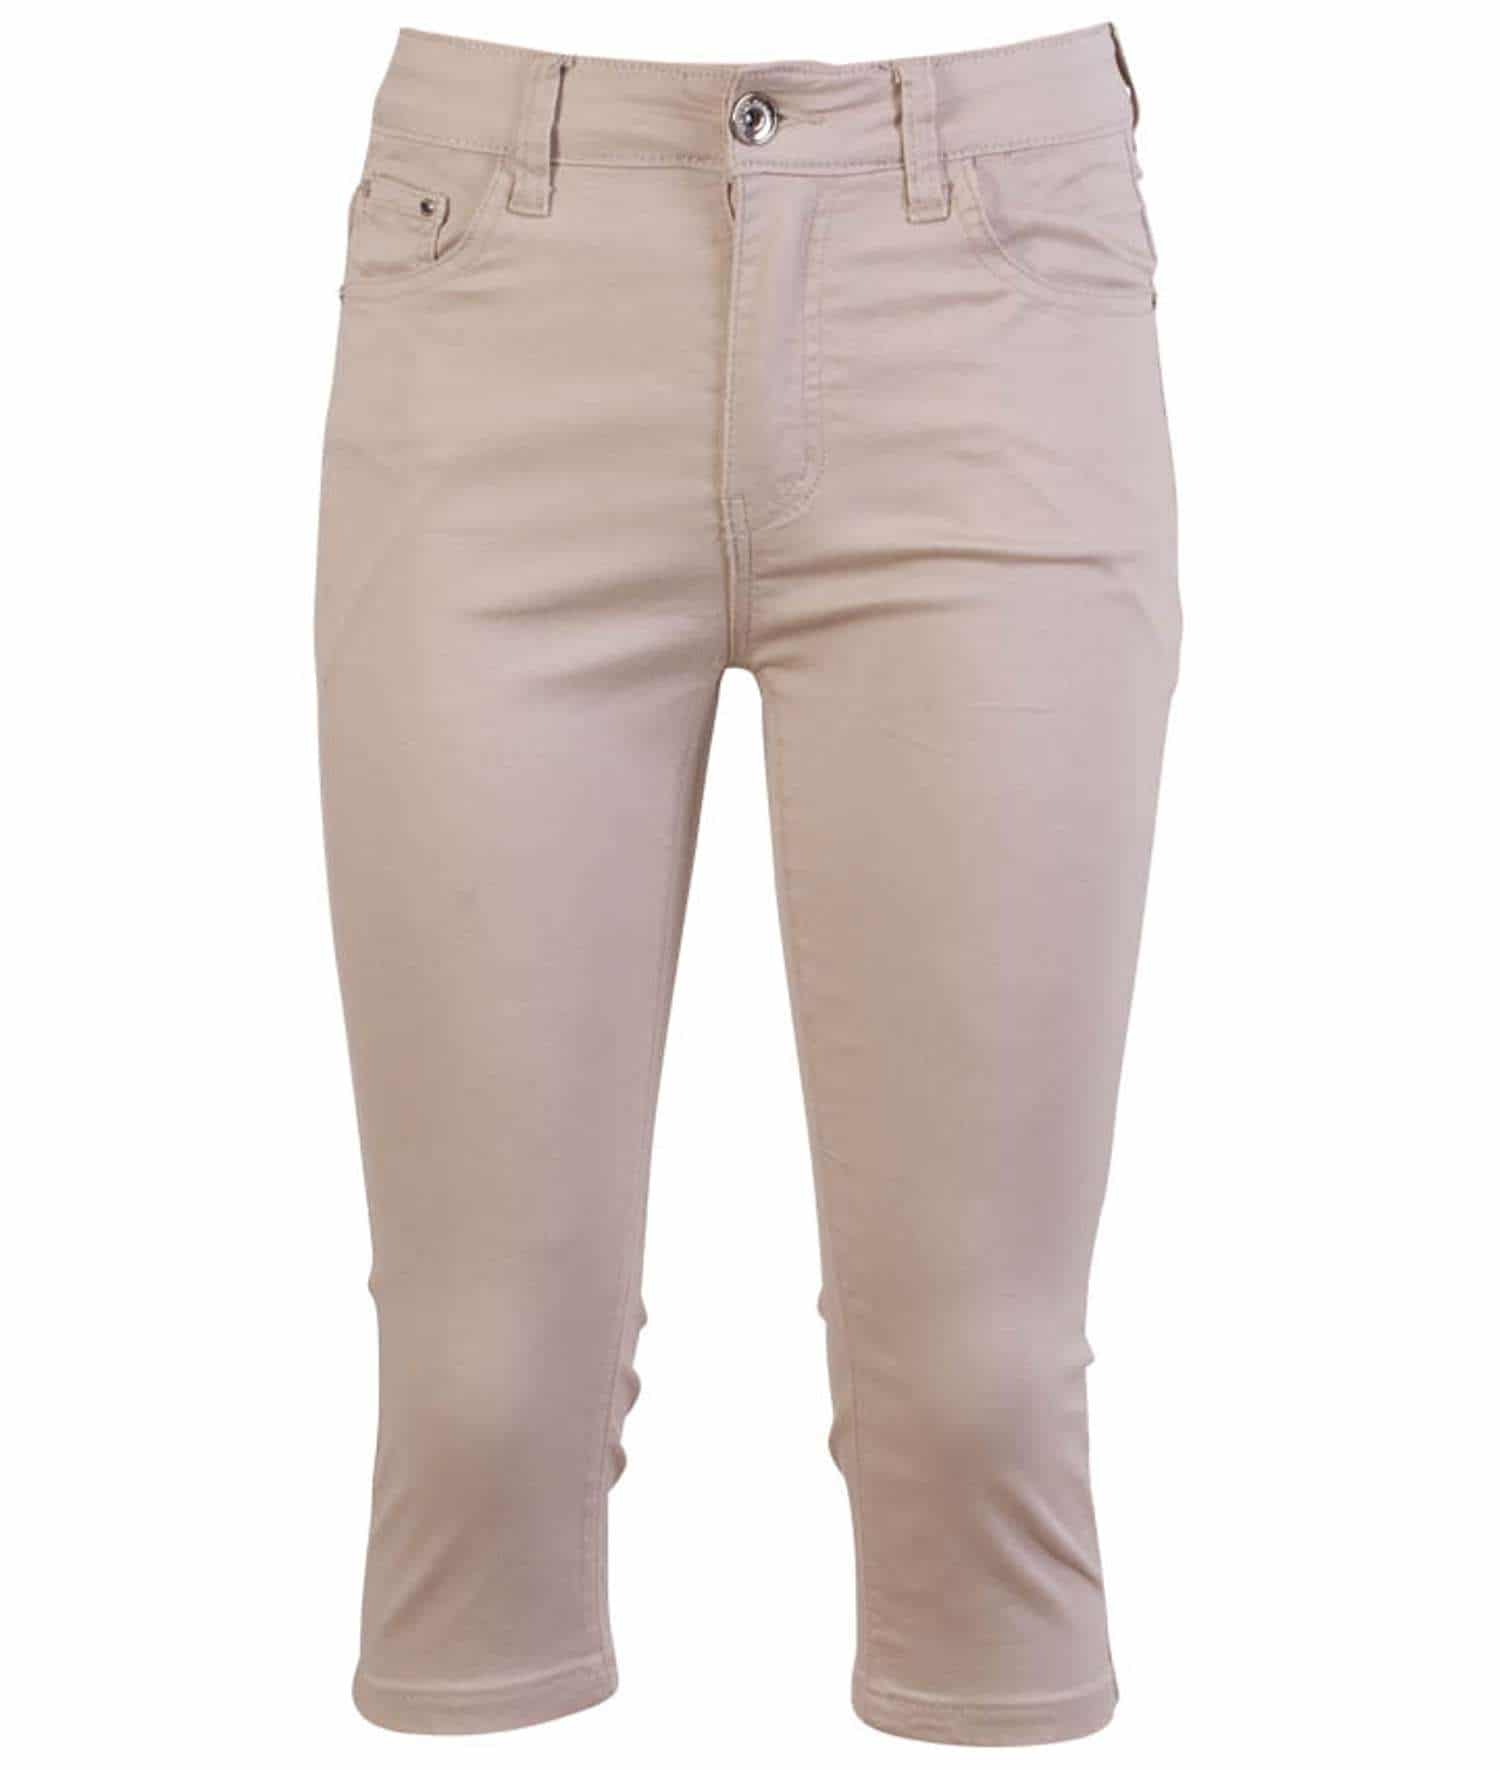 BS Jeans - Dame trekvart bukser - Str. 36 - Beige Bukser